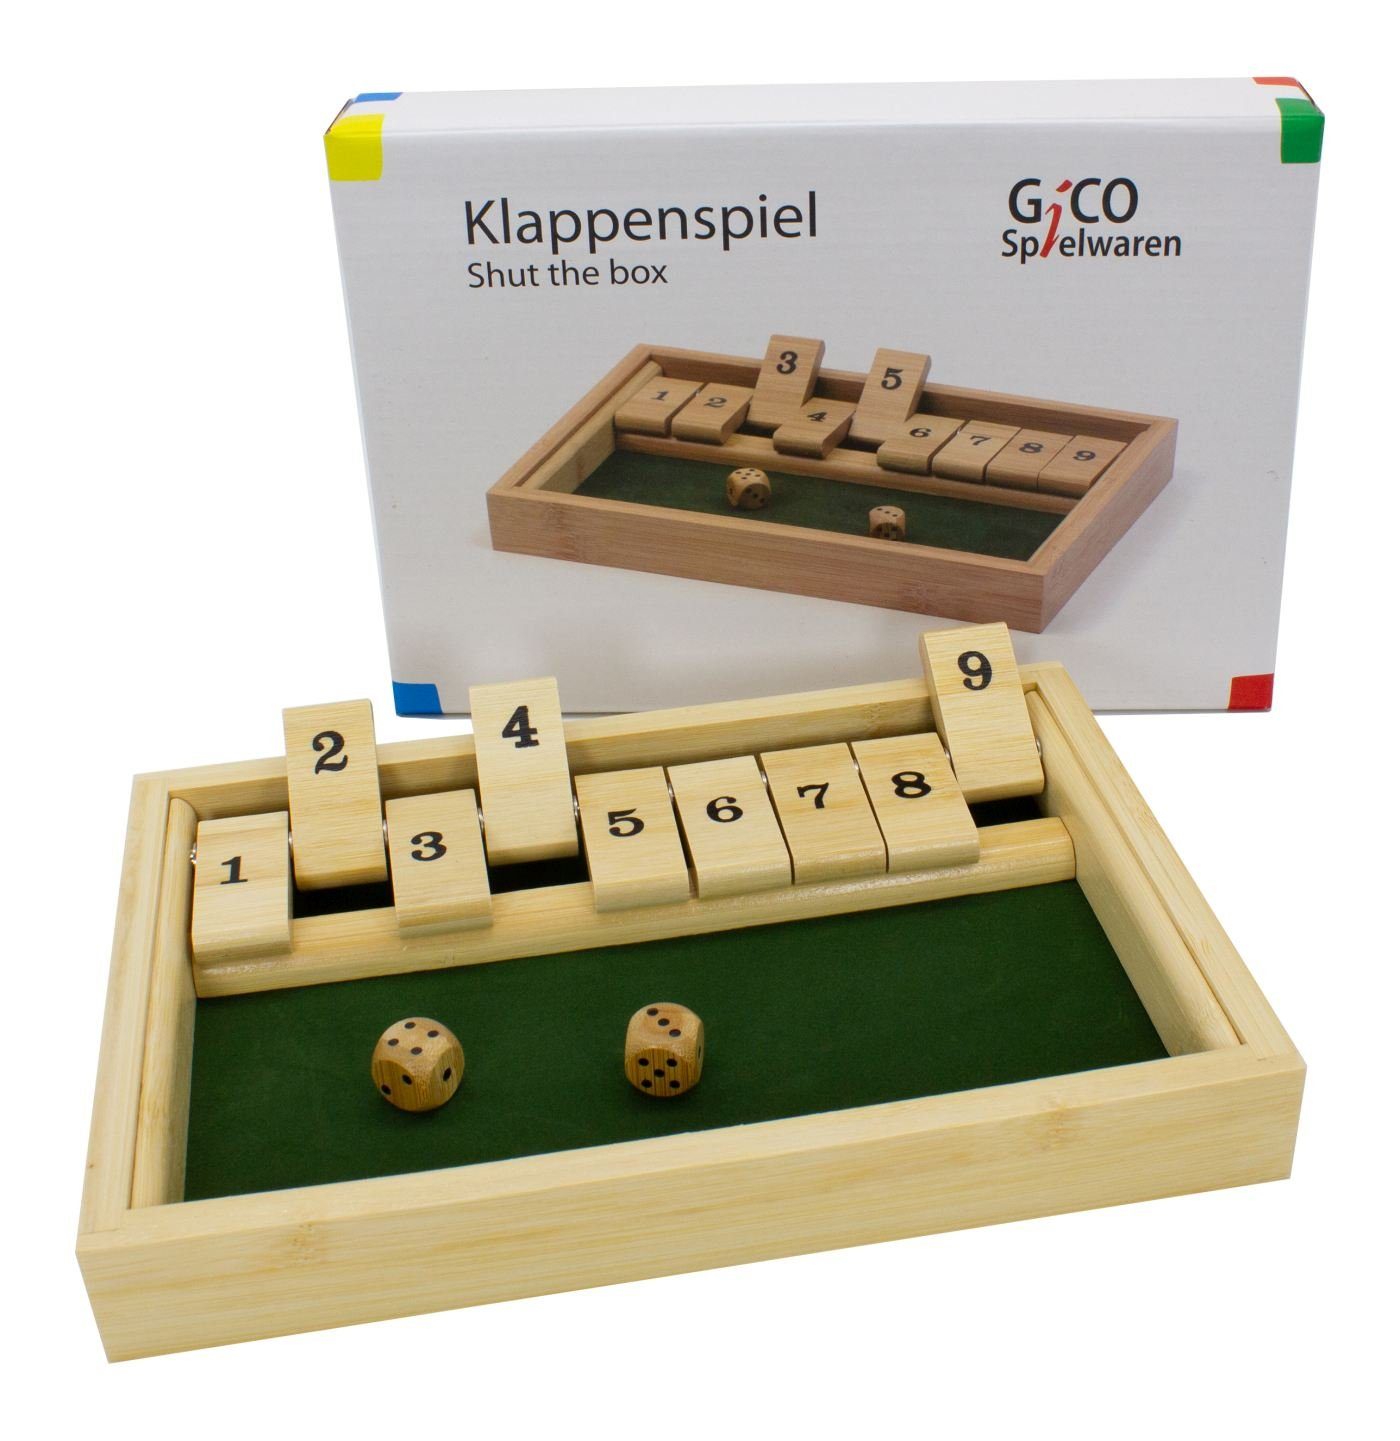 GICO Spielesammlung, GICO the Gesellschaftss box Shut Das / Holz. aus Klappenspiel bekannte